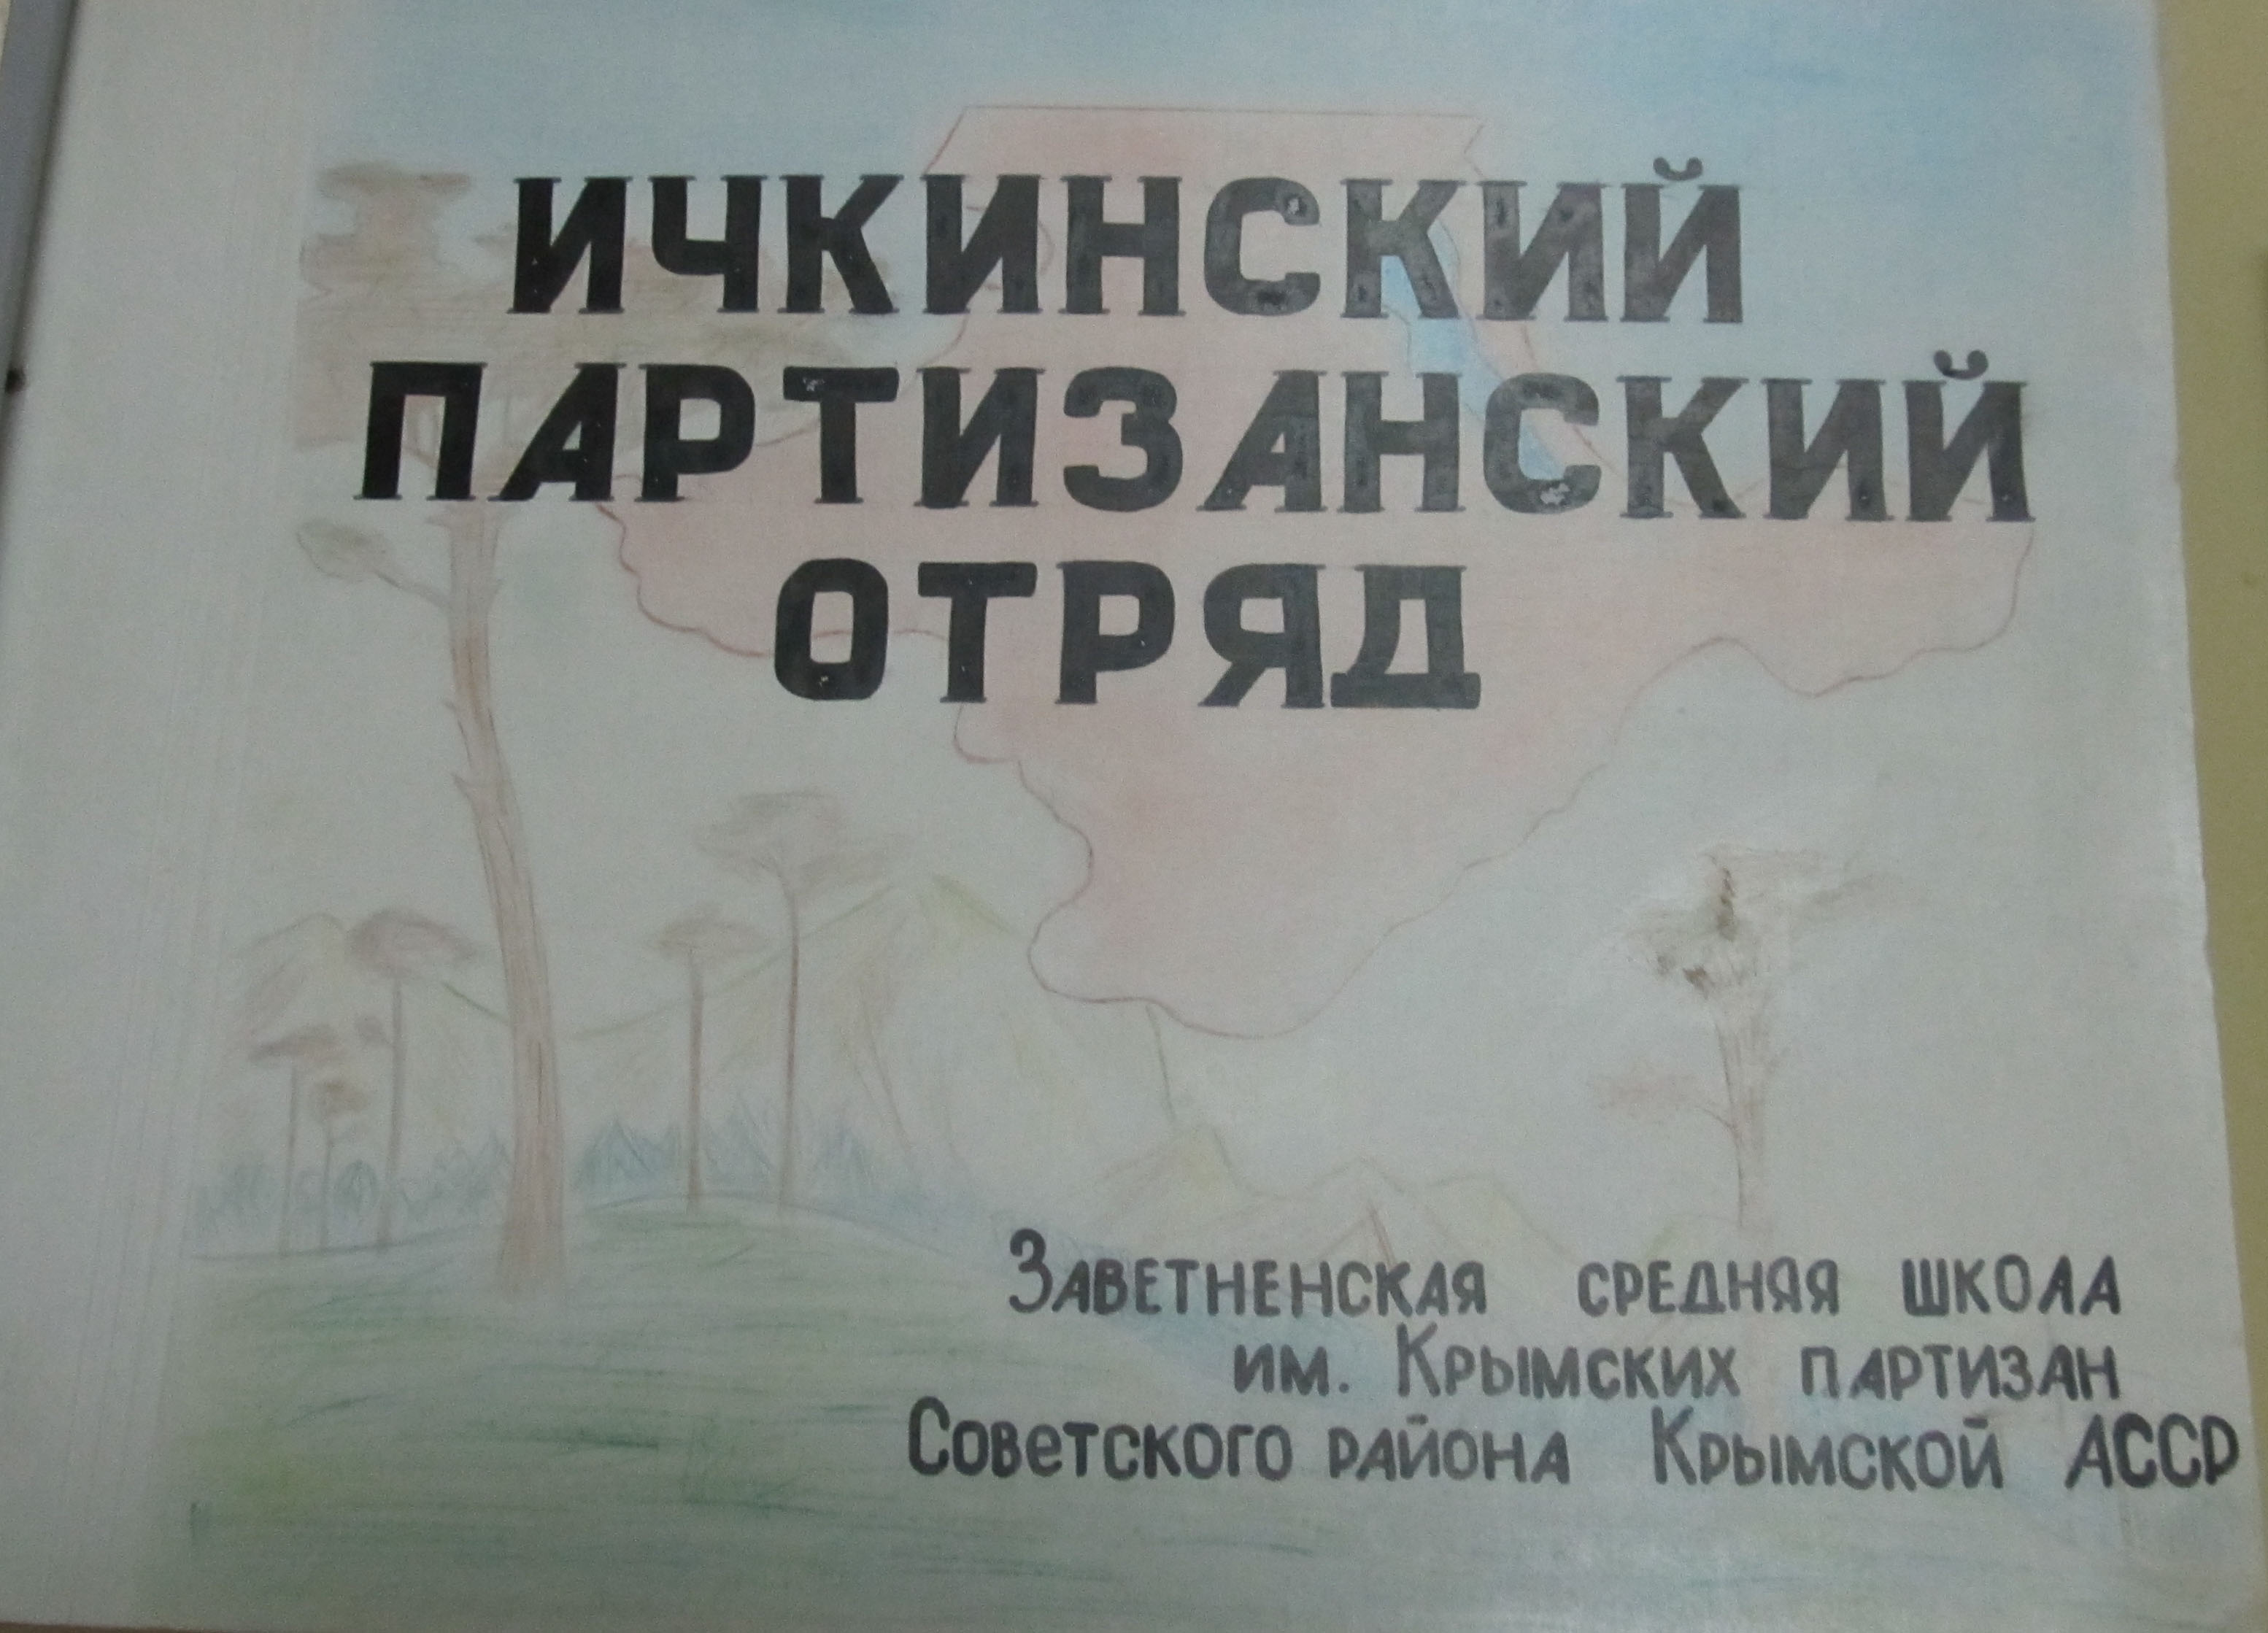 Фотография из фондов музея Заветненской с.ш. им.Крымских партизан